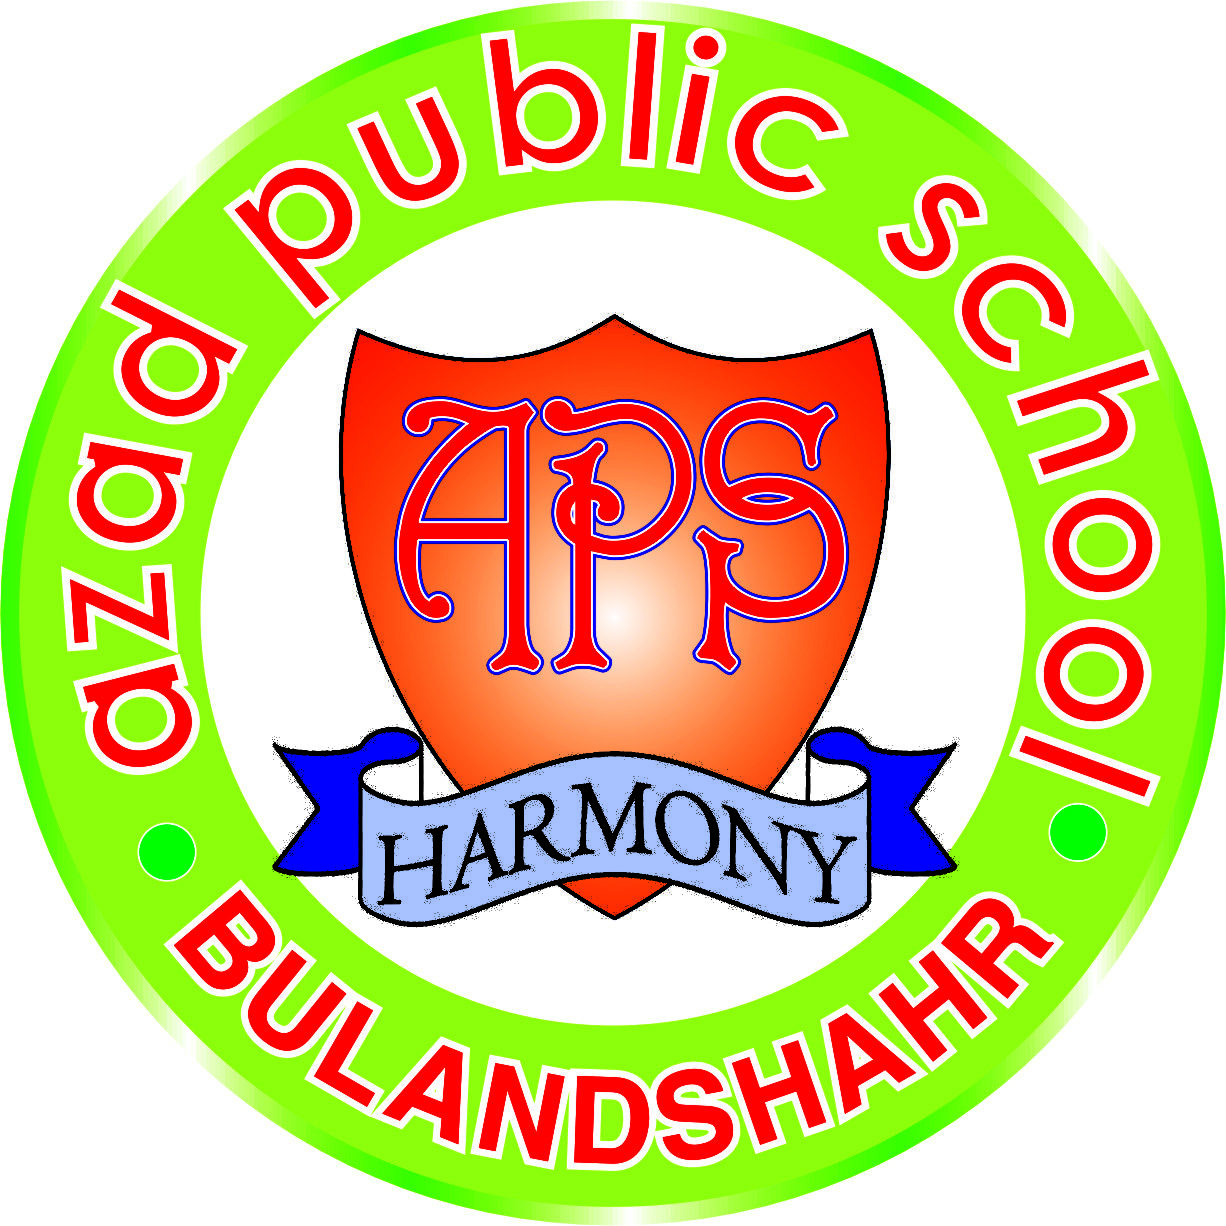 Azad Public School|Schools|Education